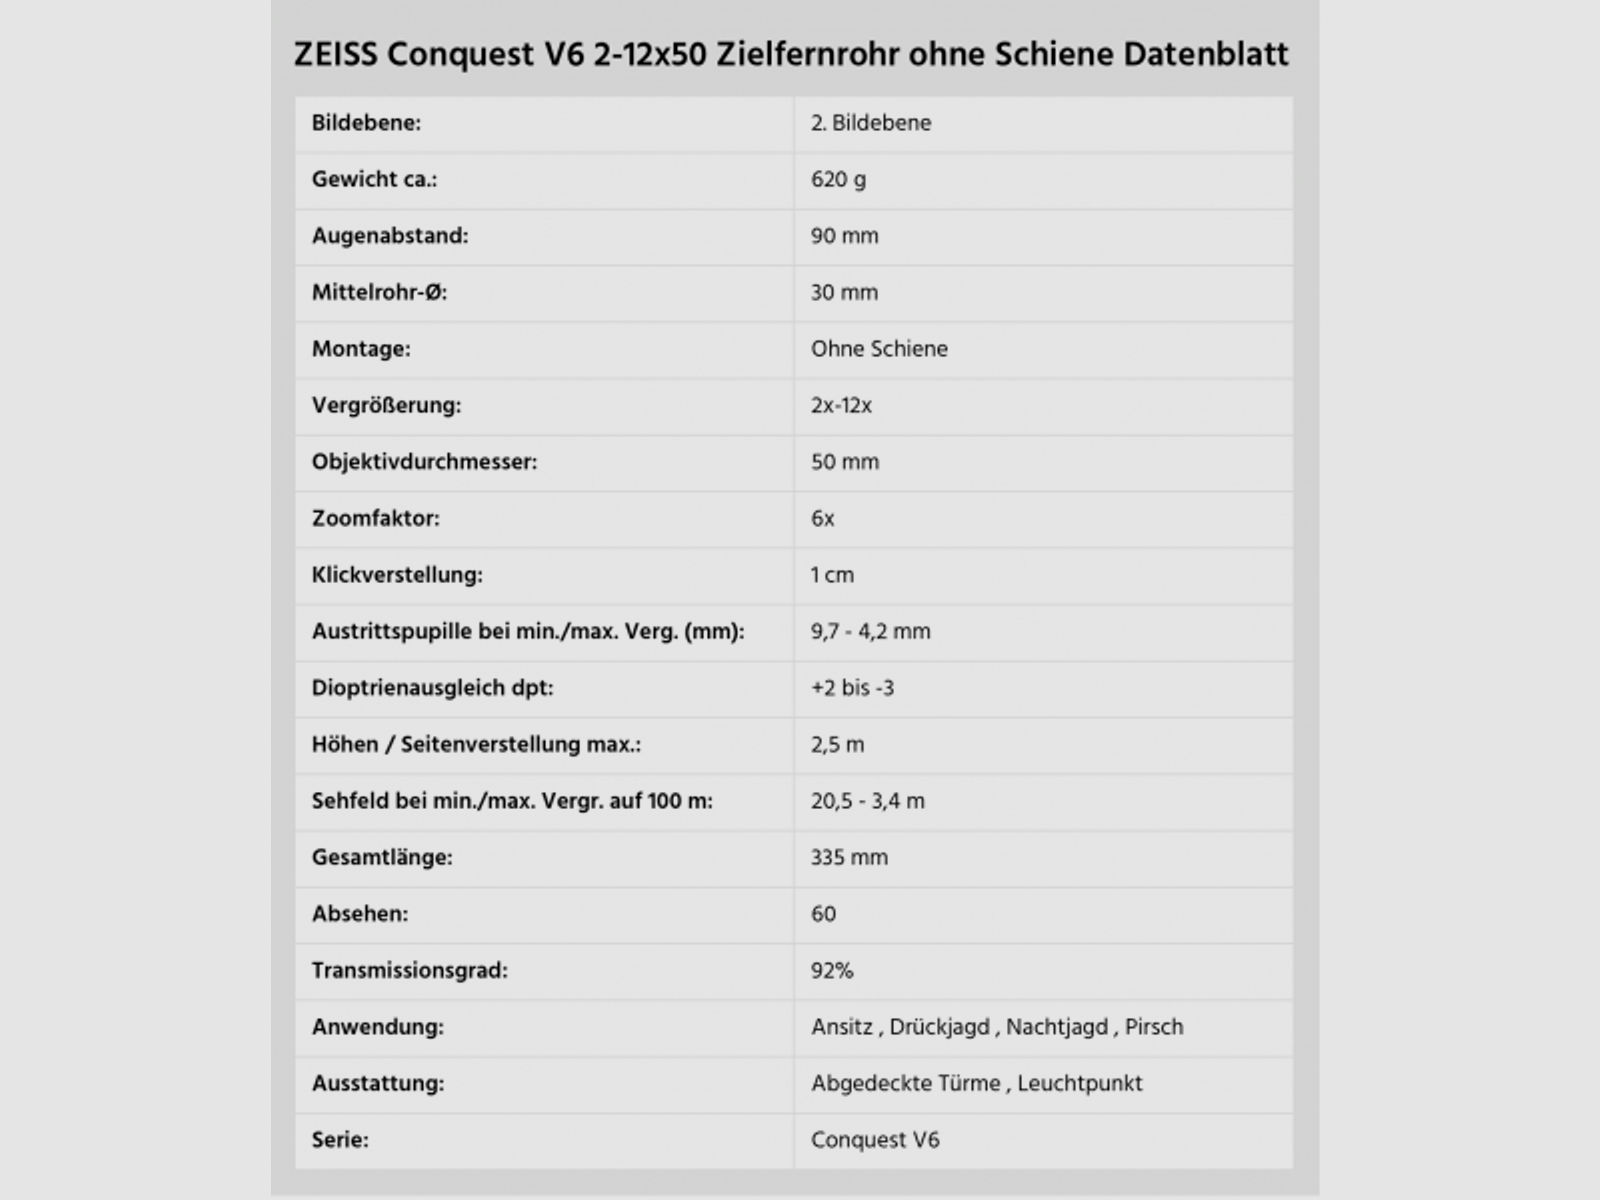 ZEISS Conquest V6 2-12x50 Zielfernrohr